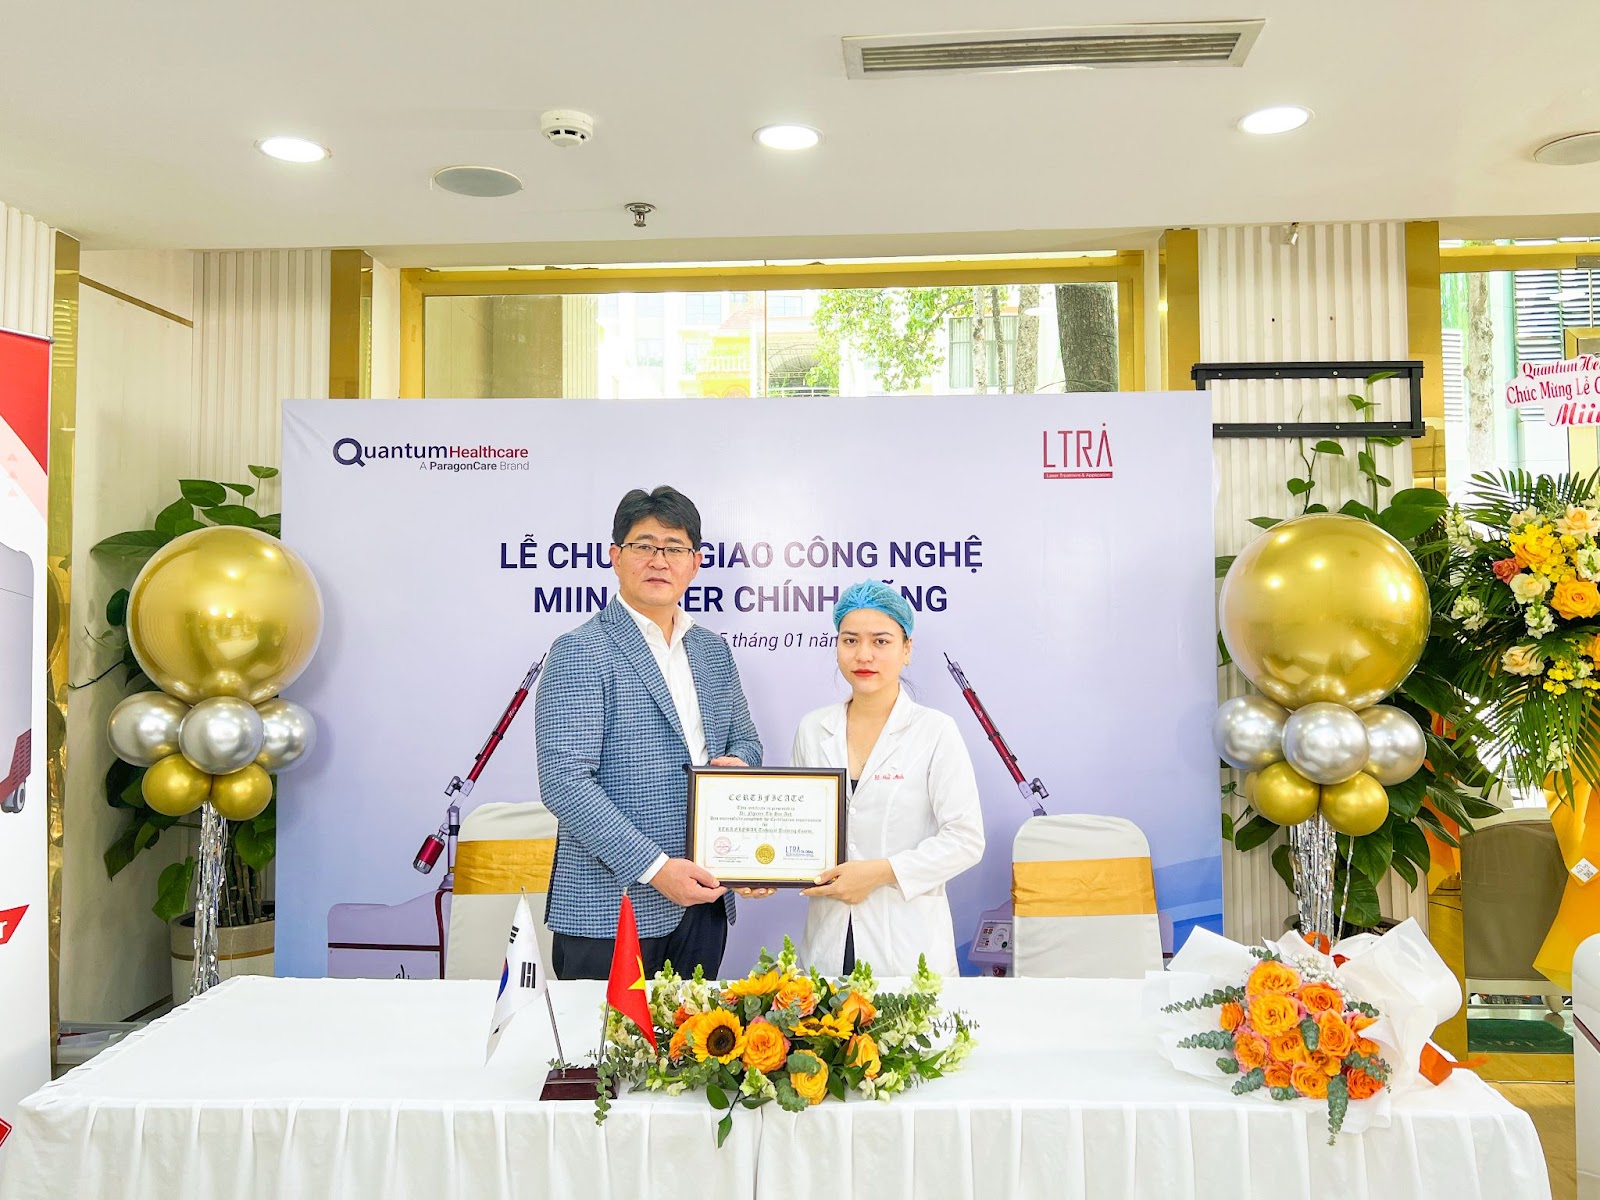 Bác sĩ Huế Anh dự lễ chuyển giao công nghệ MIIN LASER với công ty cổ phần Quantum Healthcare Việt Nam